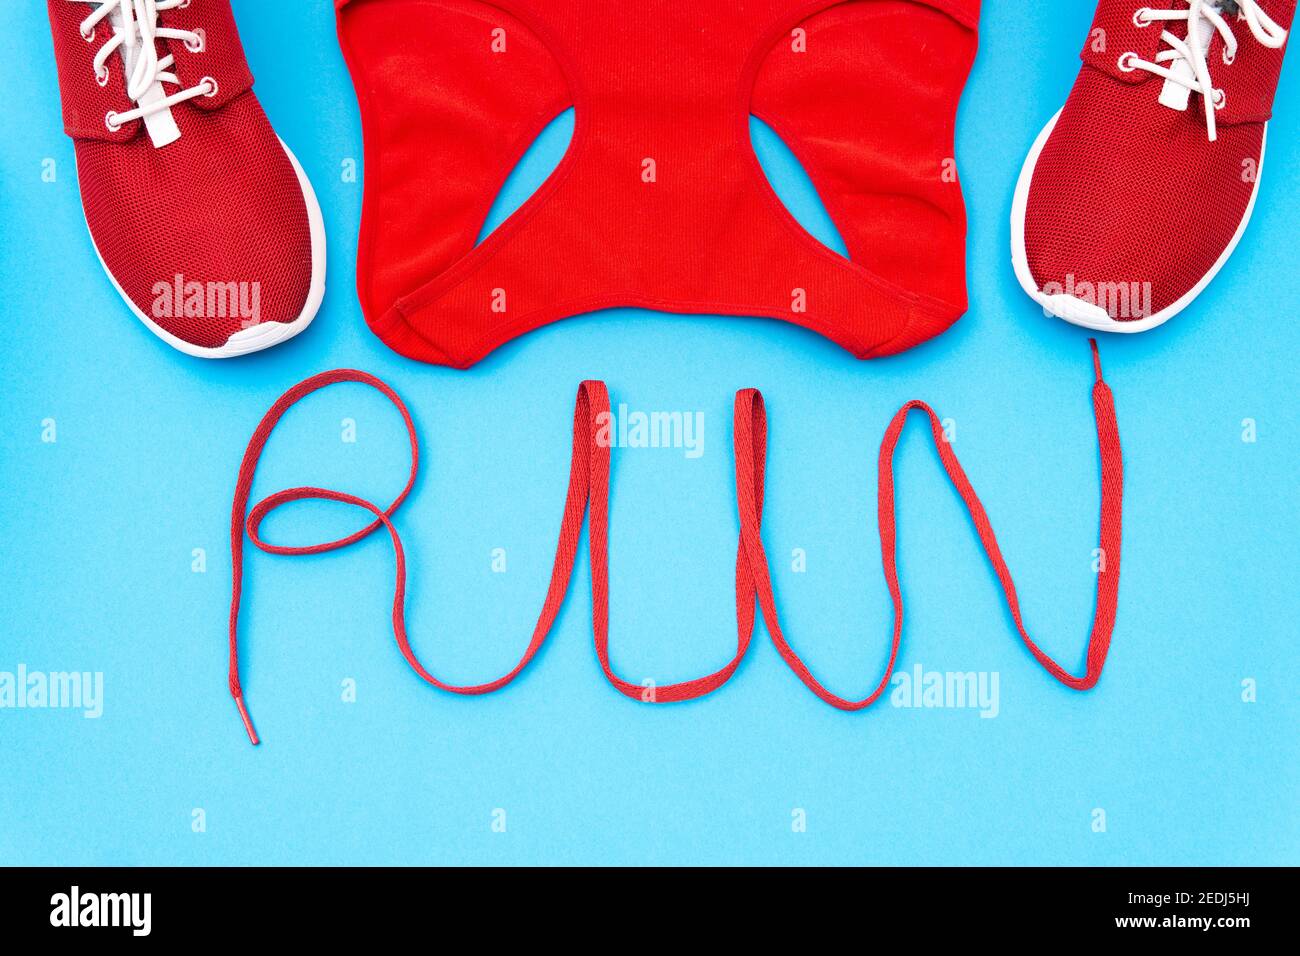 Rote Turnschuhe und ein Trainingstank mit Schriftzug "Run" aus einem Schnürsenkel auf blauem Hintergrund. Kreatives Flat Lay, aktives Lifestyle-Konzept. Stockfoto